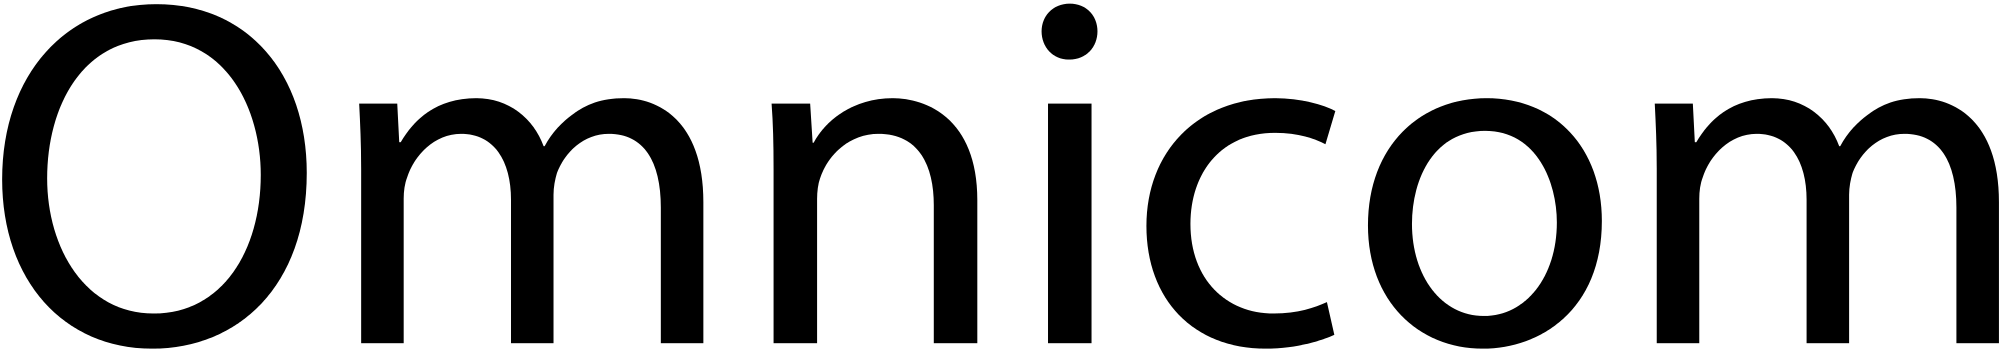 Omnicom Group Logo ENGAGE Omn